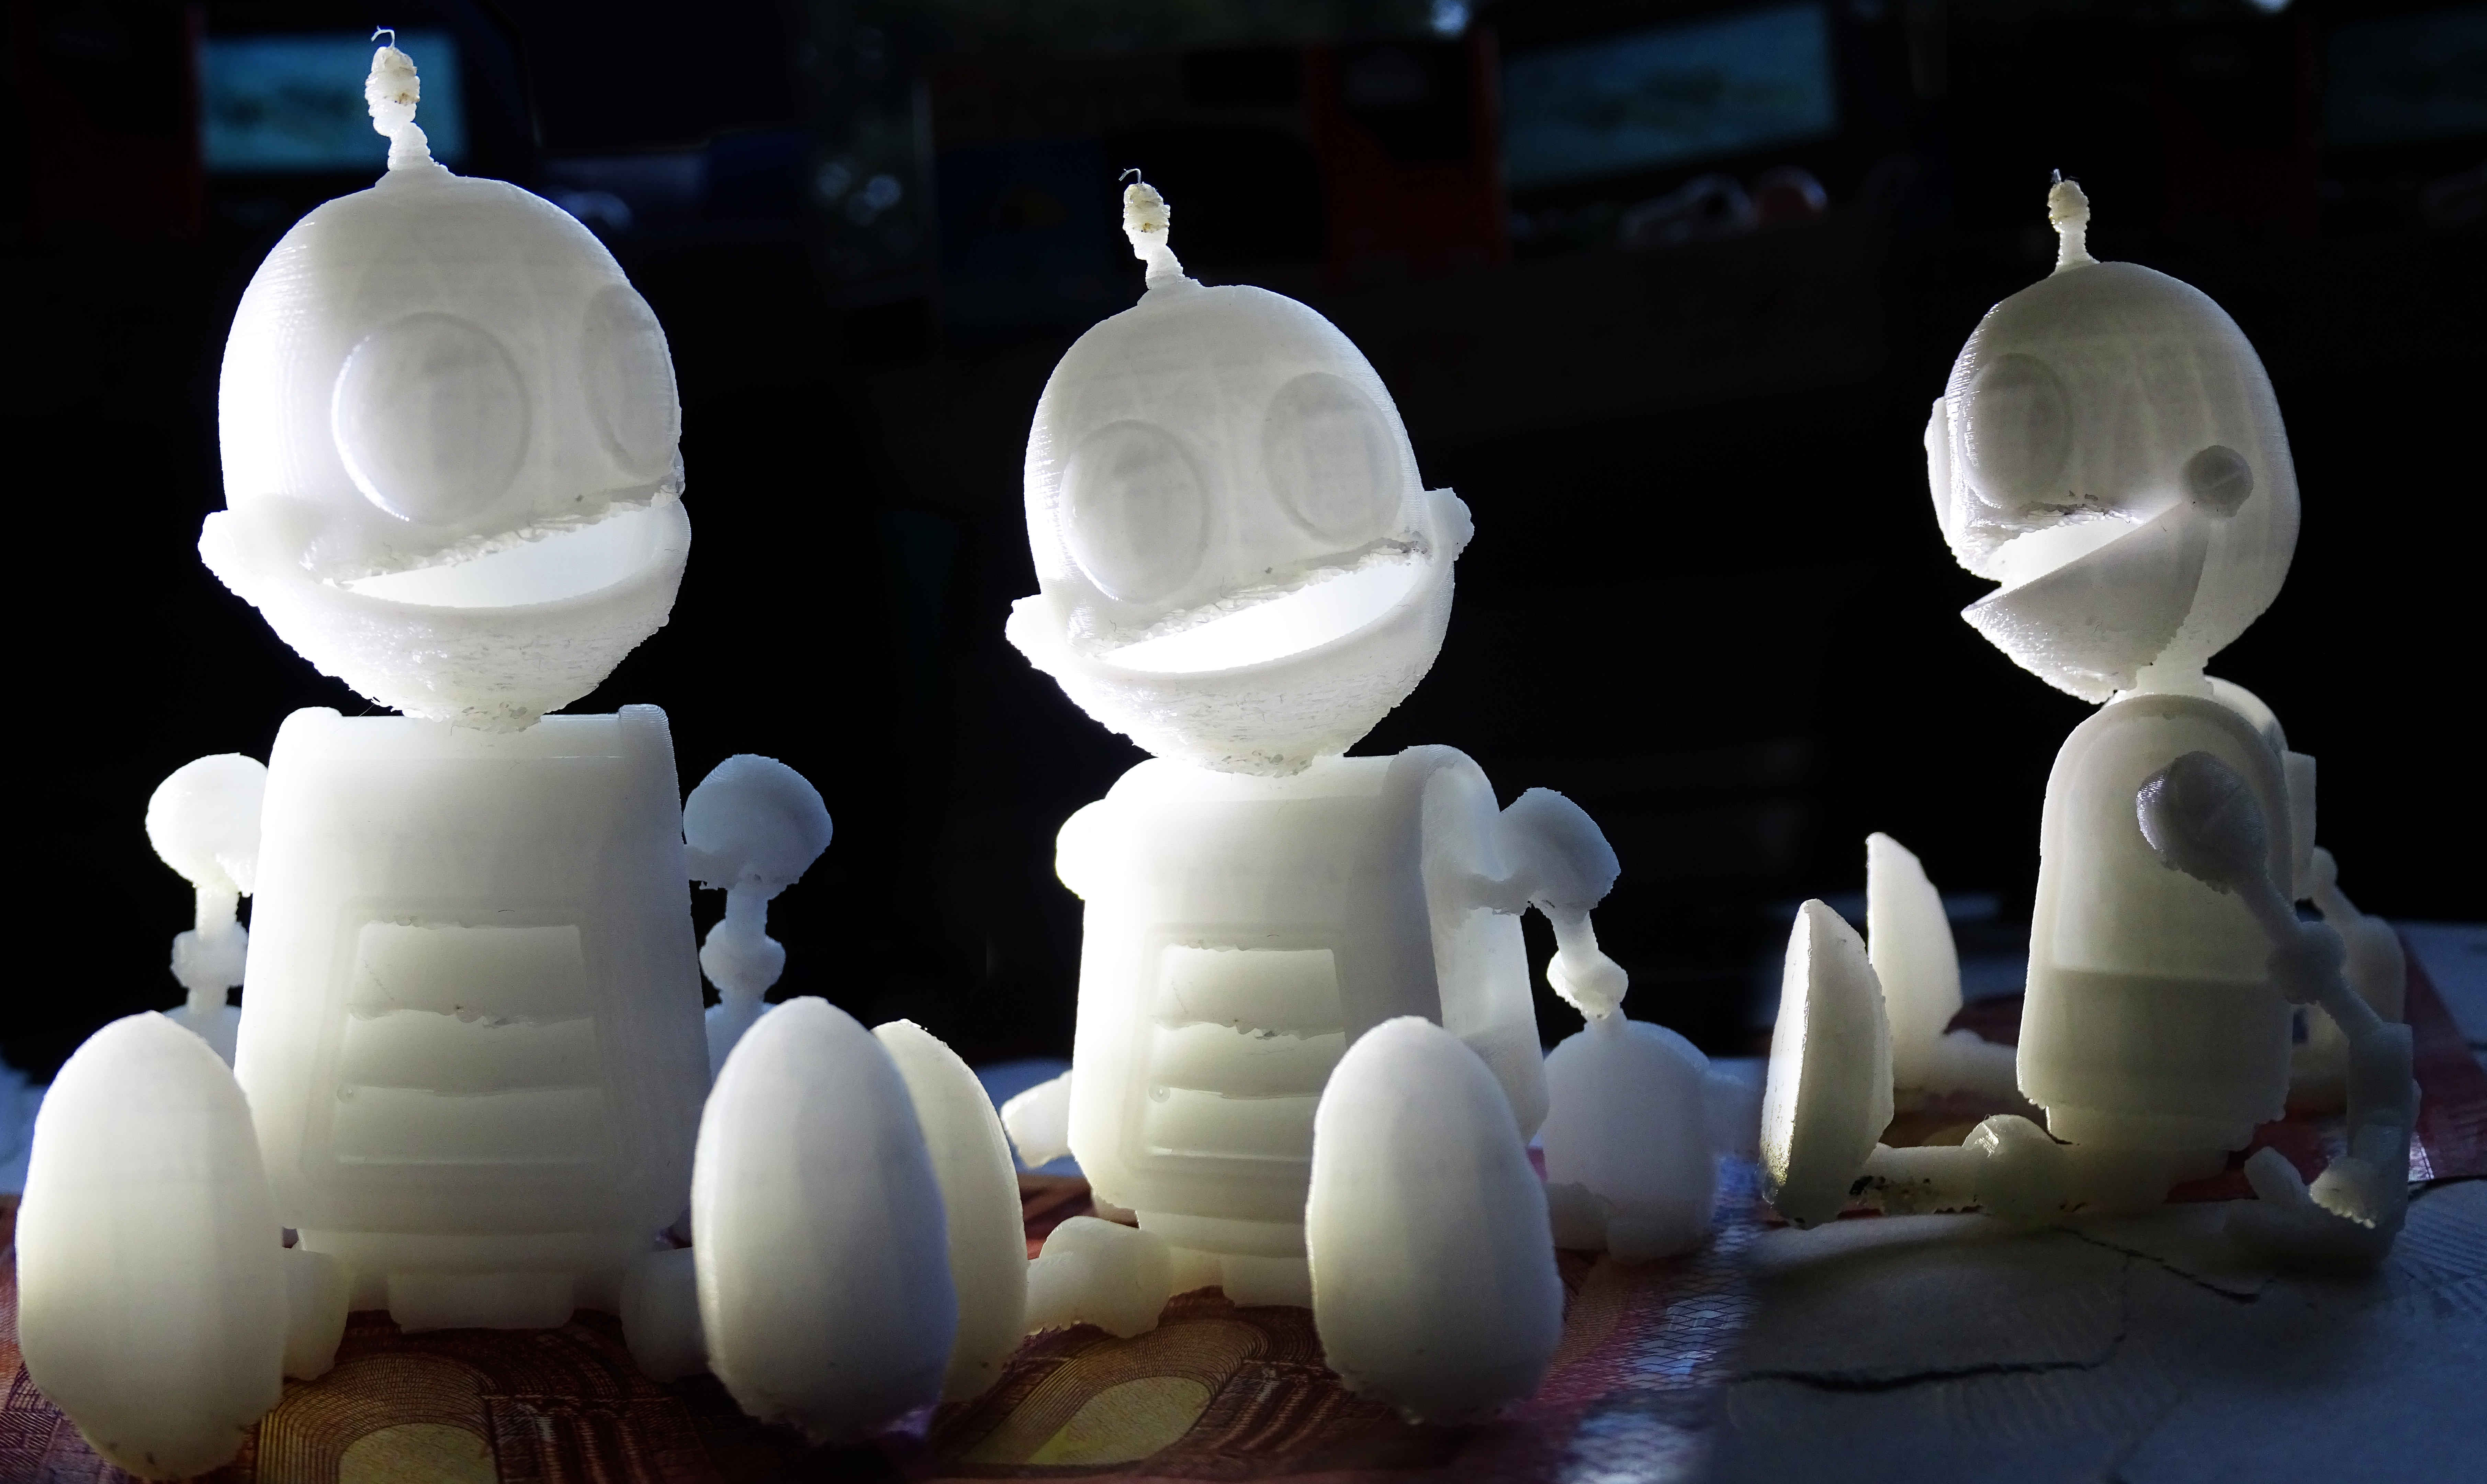 3D Printed by Sharkigator on